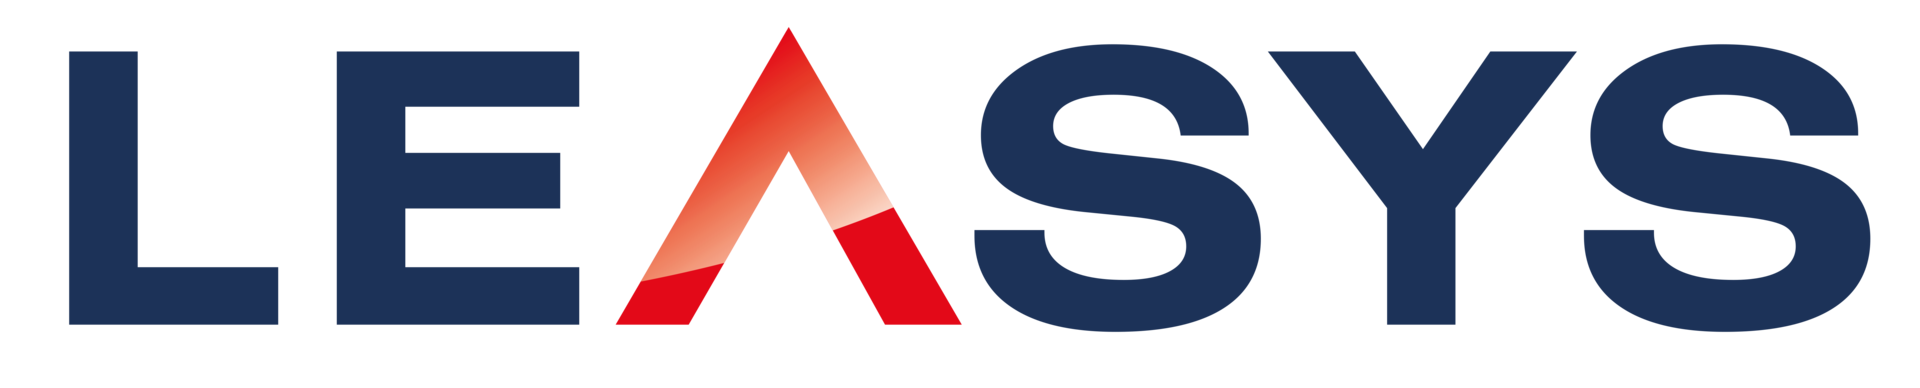 LEASYS-logo